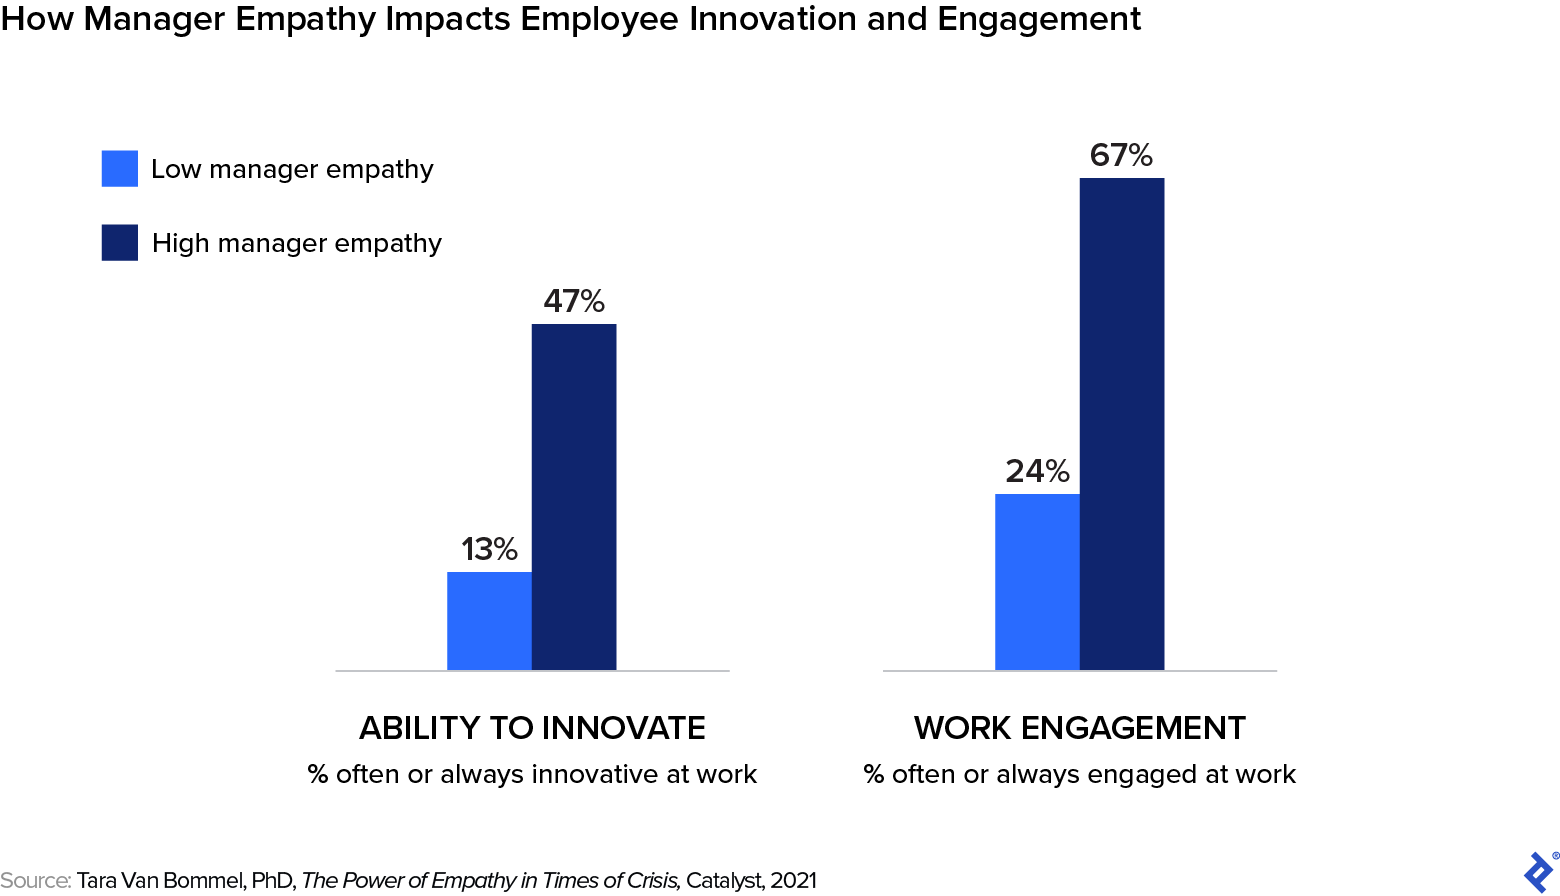 La empatía de los directivos aumenta la capacidad de innovar y el compromiso laboral de los empleados.